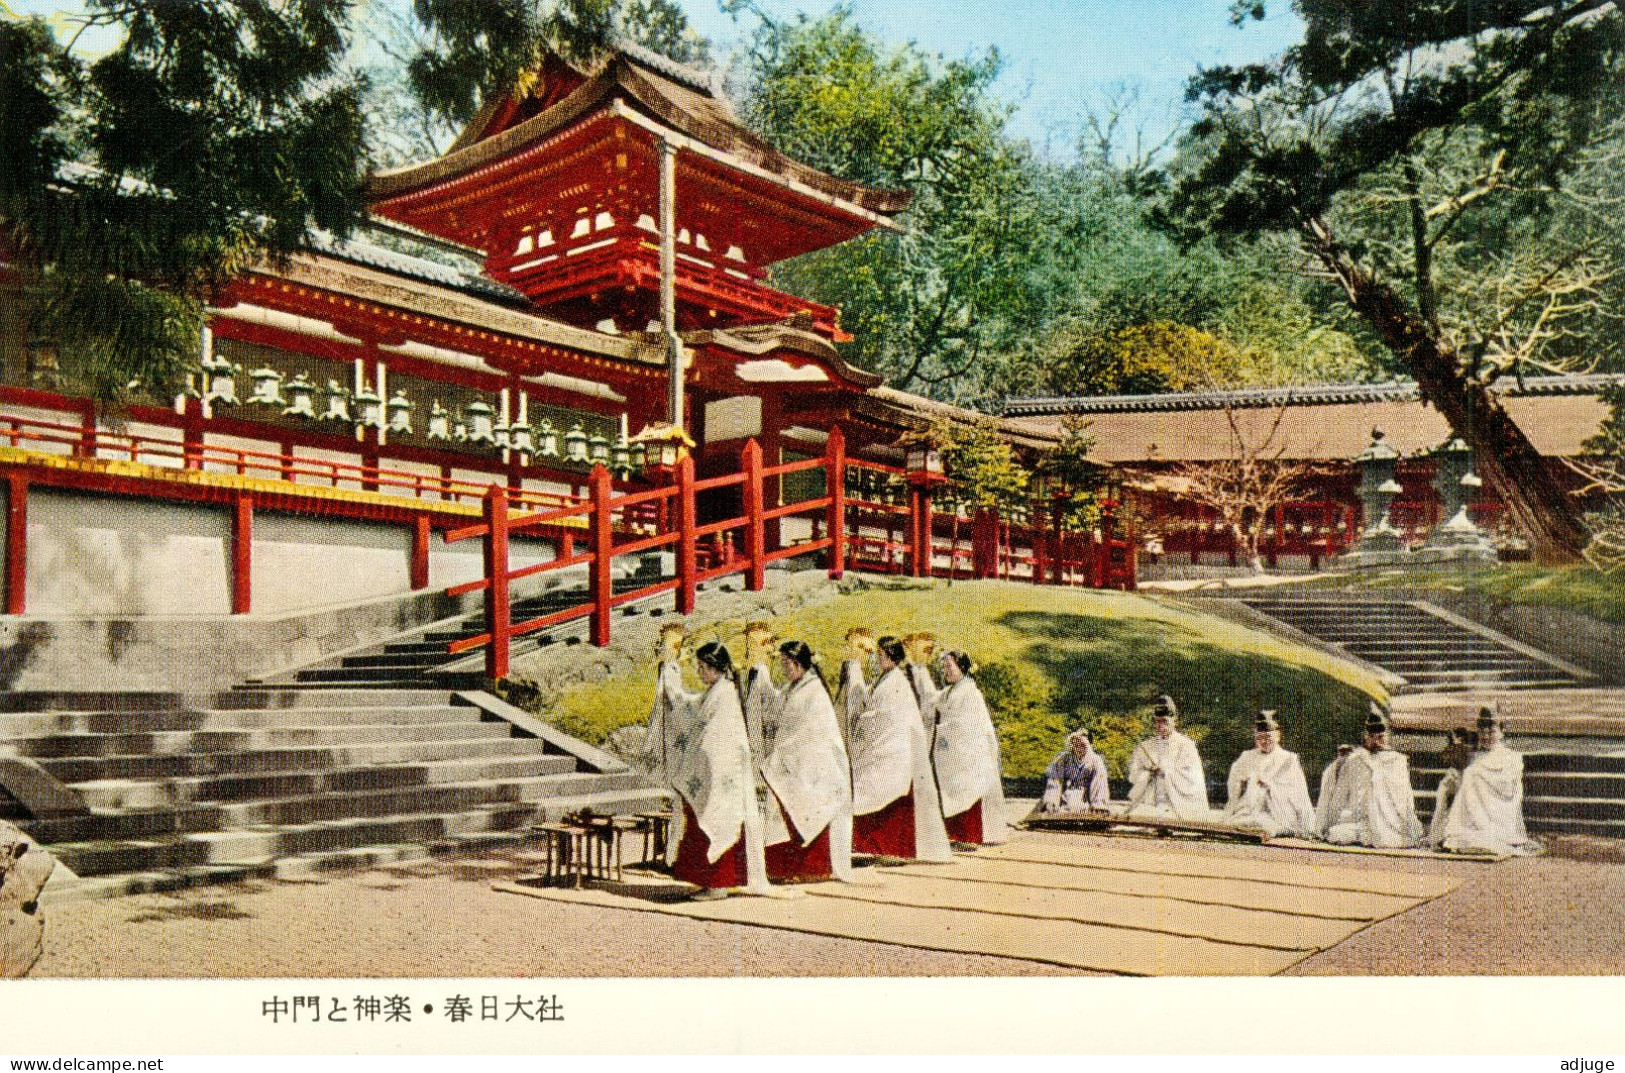 Japon- Lot de 8 cartes Kasuga-Taisha  sanctuaire shinto de la ville de Nara * SUP * cf.scans